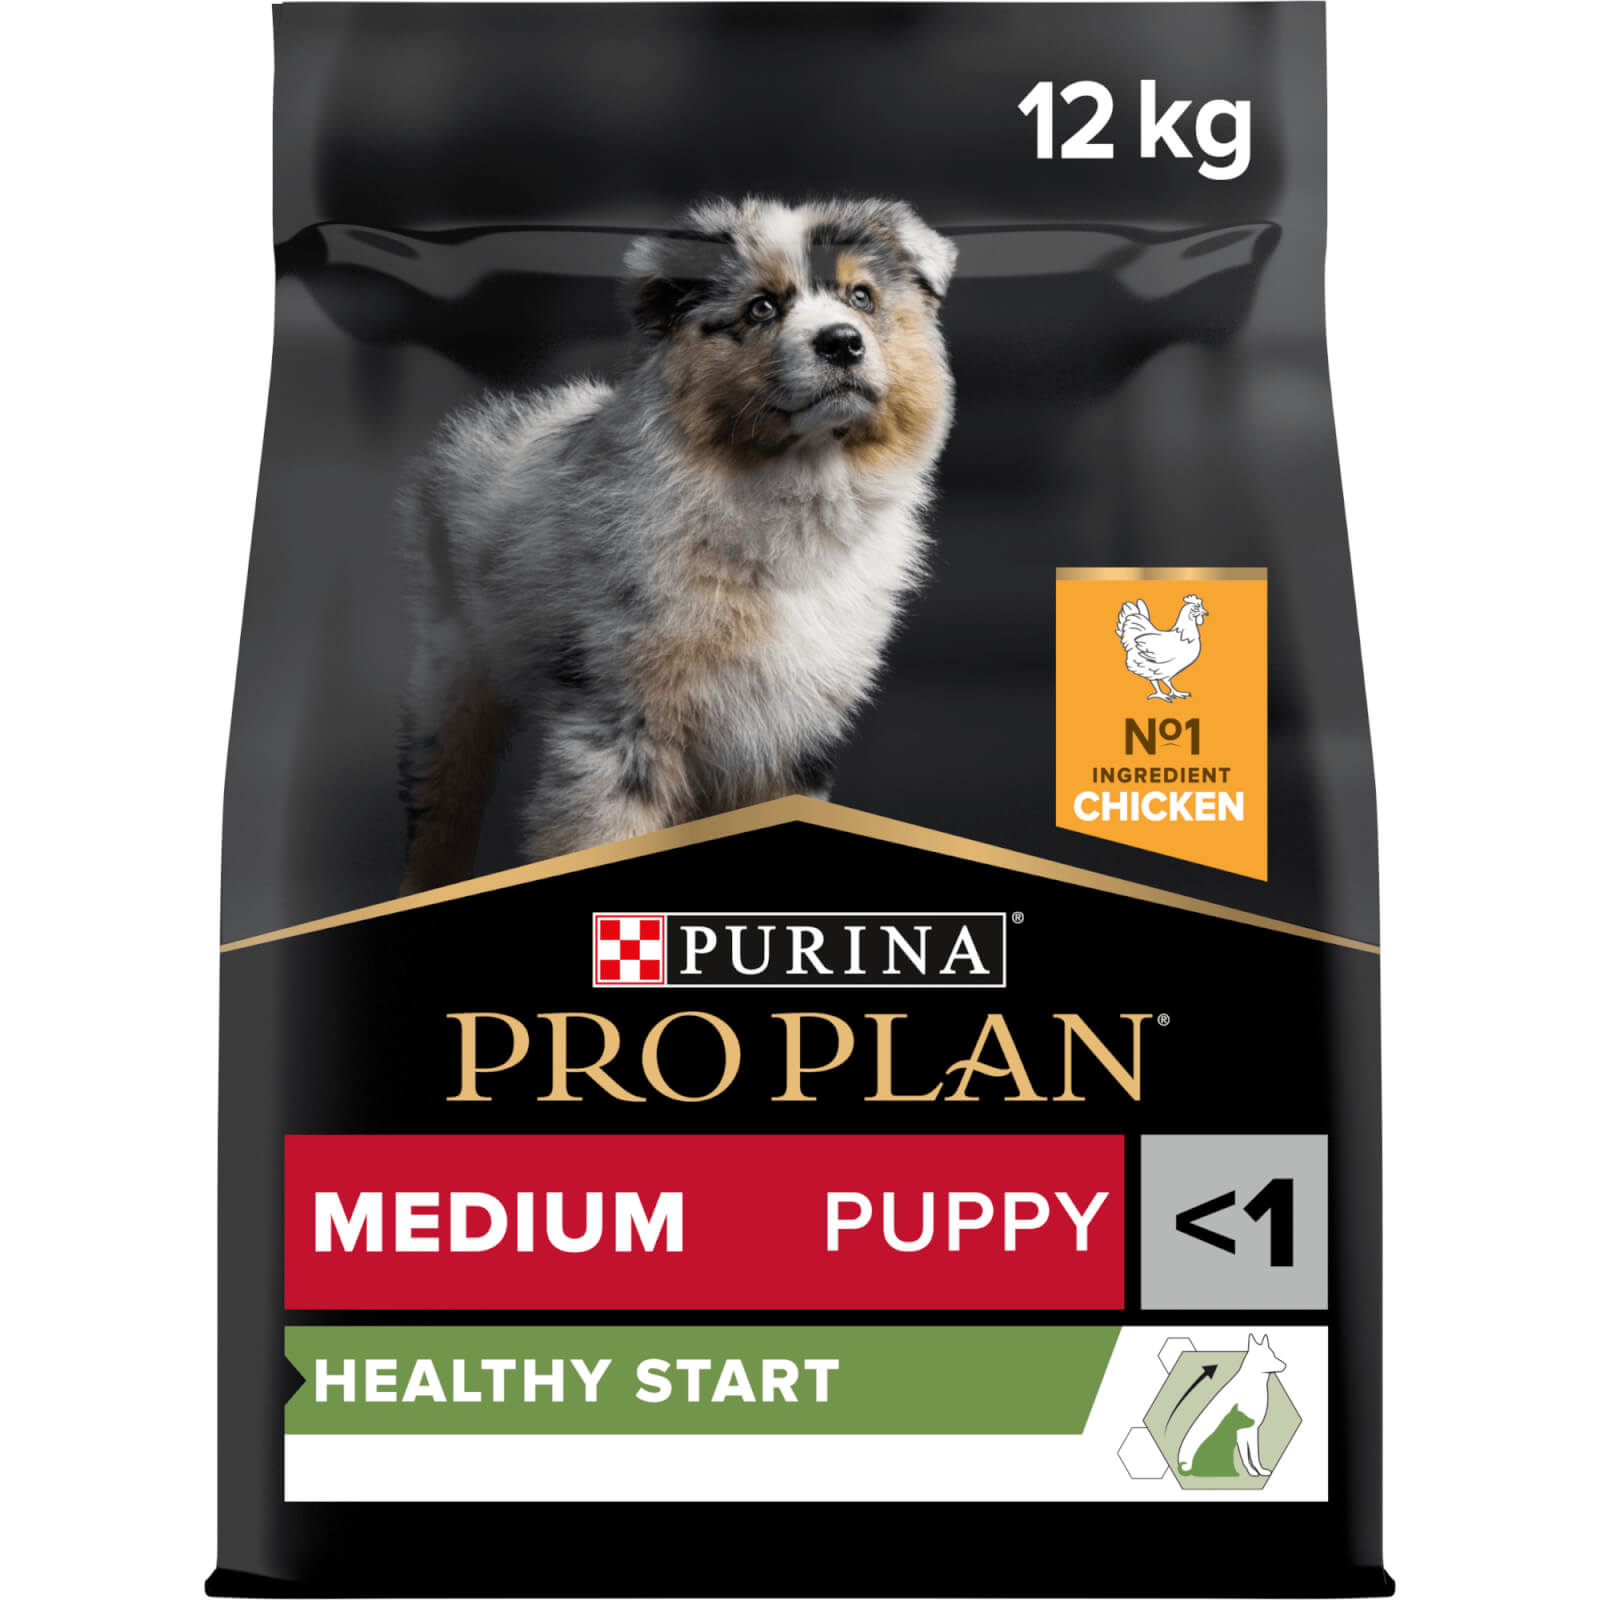 PRO PLAN Medium PUPPY HEALTHY START, reich an Huhn 12kg